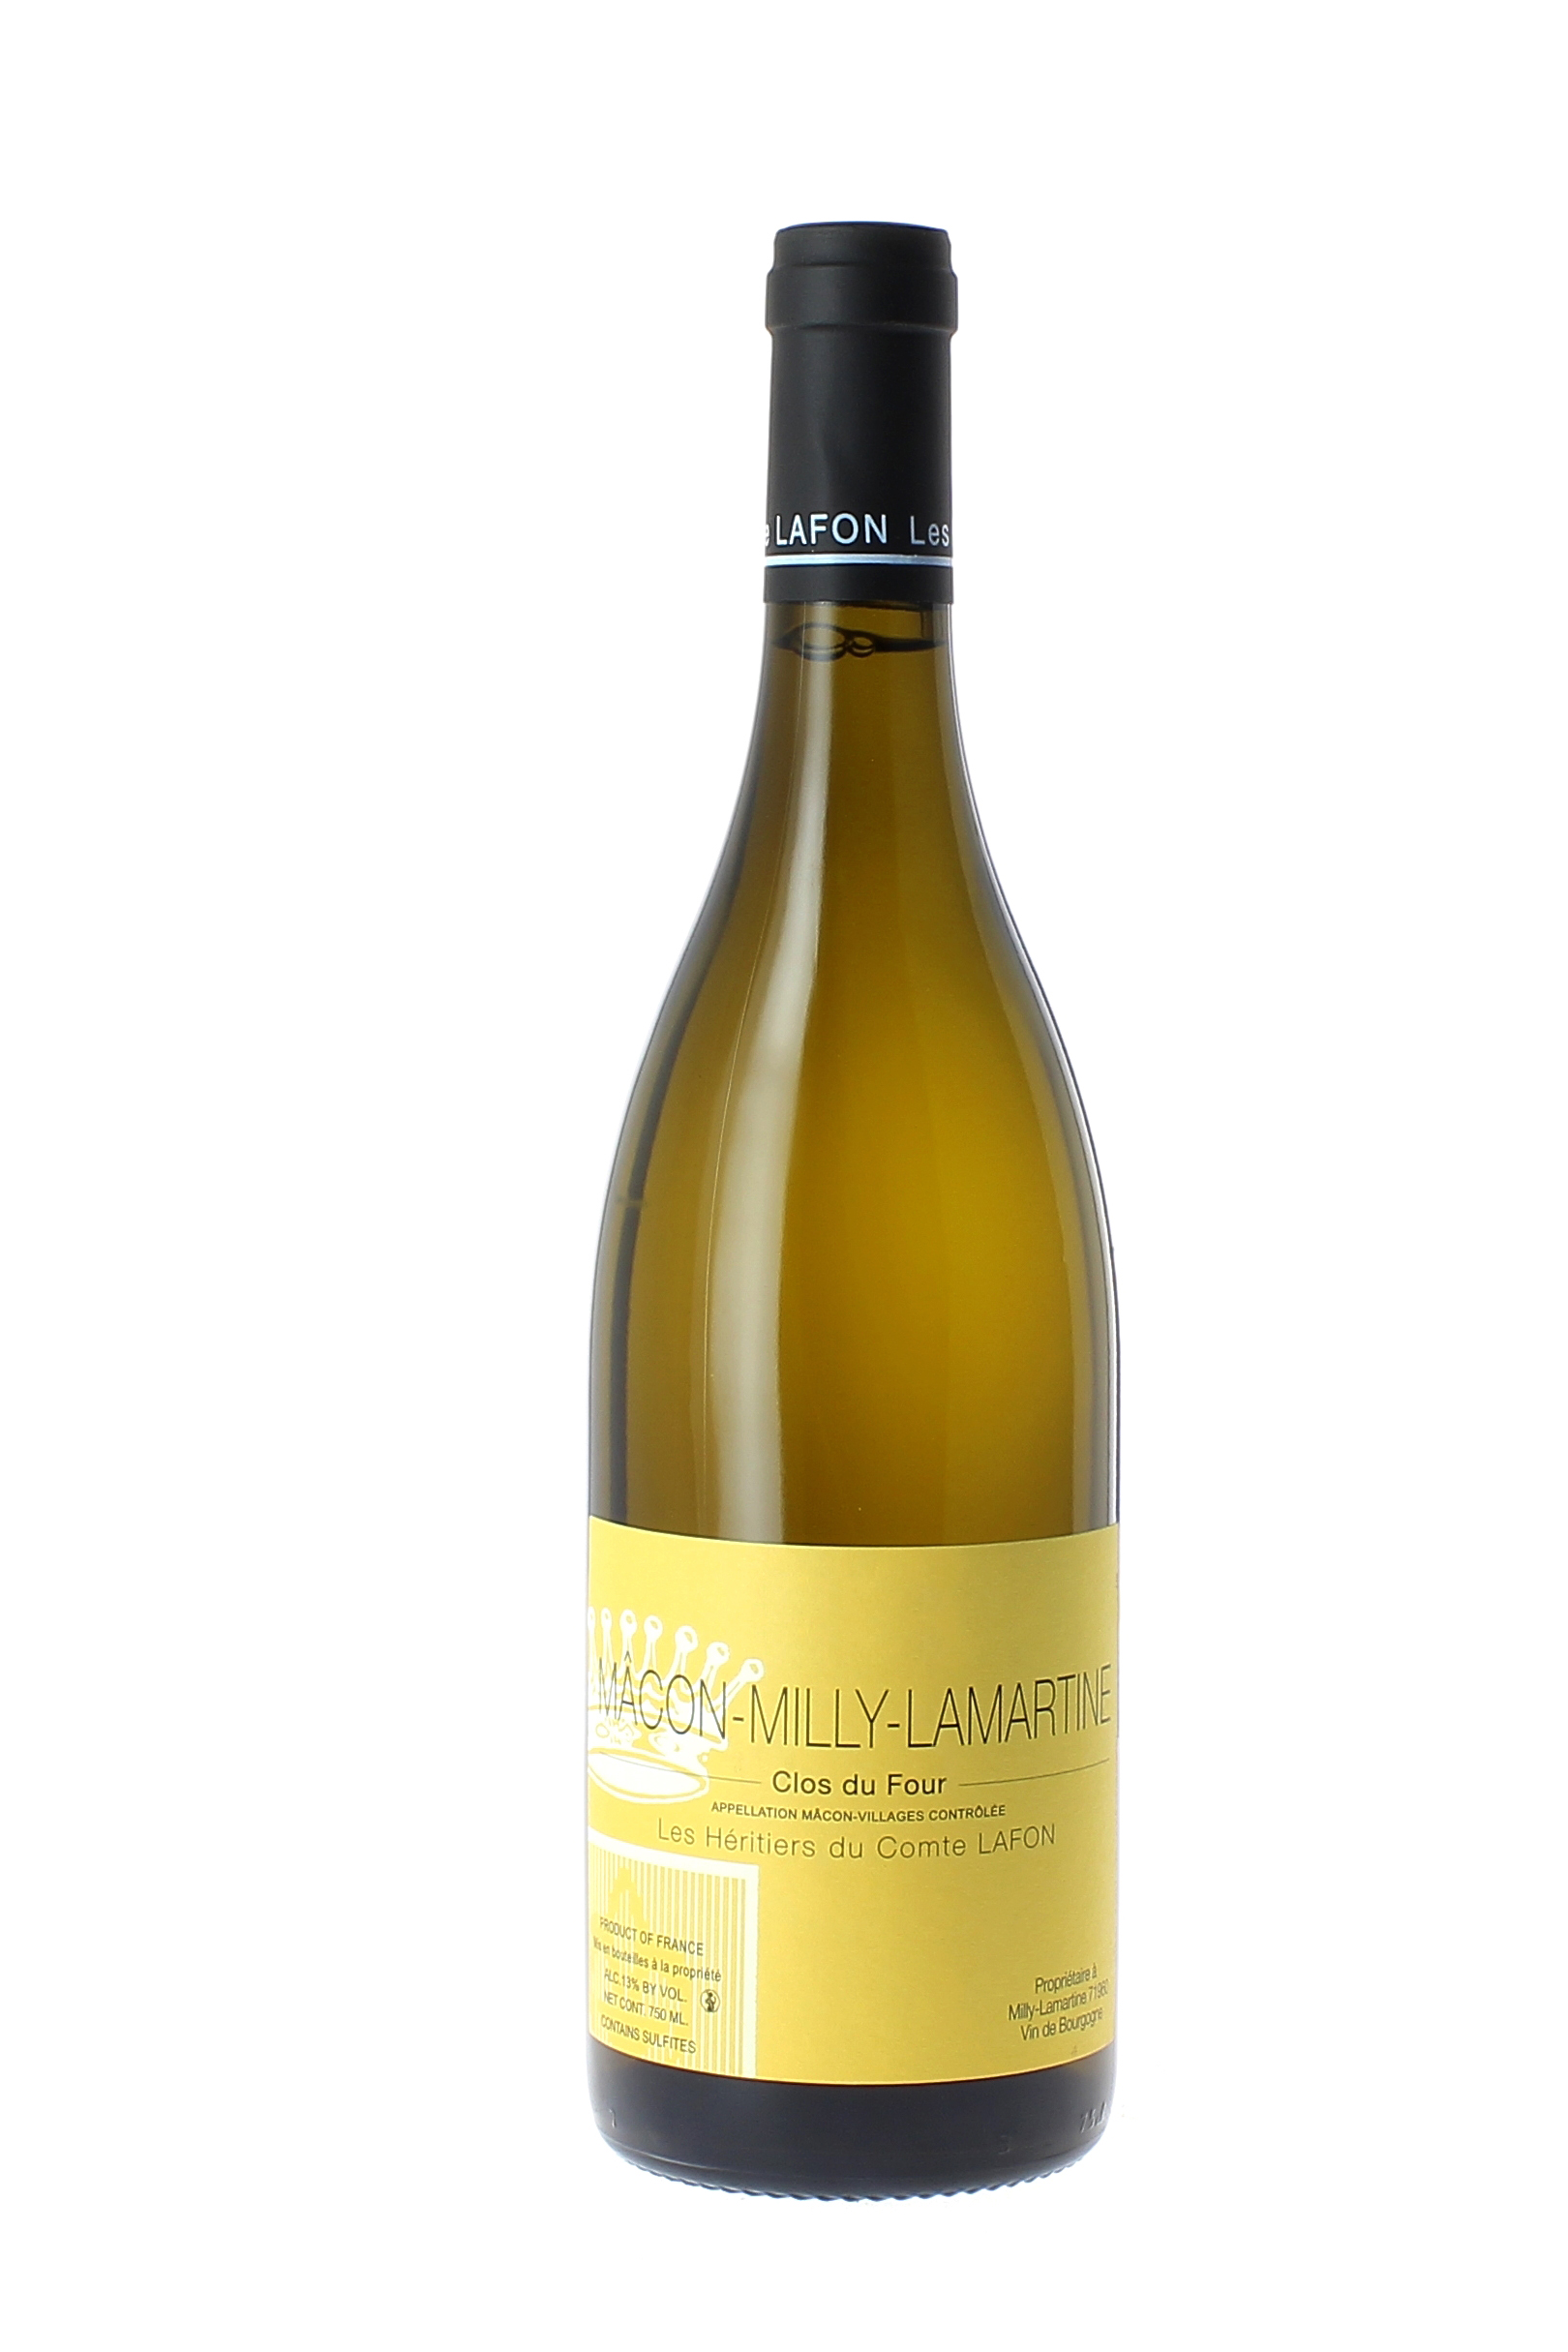 Macon milly clos du four 2014 Domaine Comtes LAFON Hritiers, Bourgogne blanc